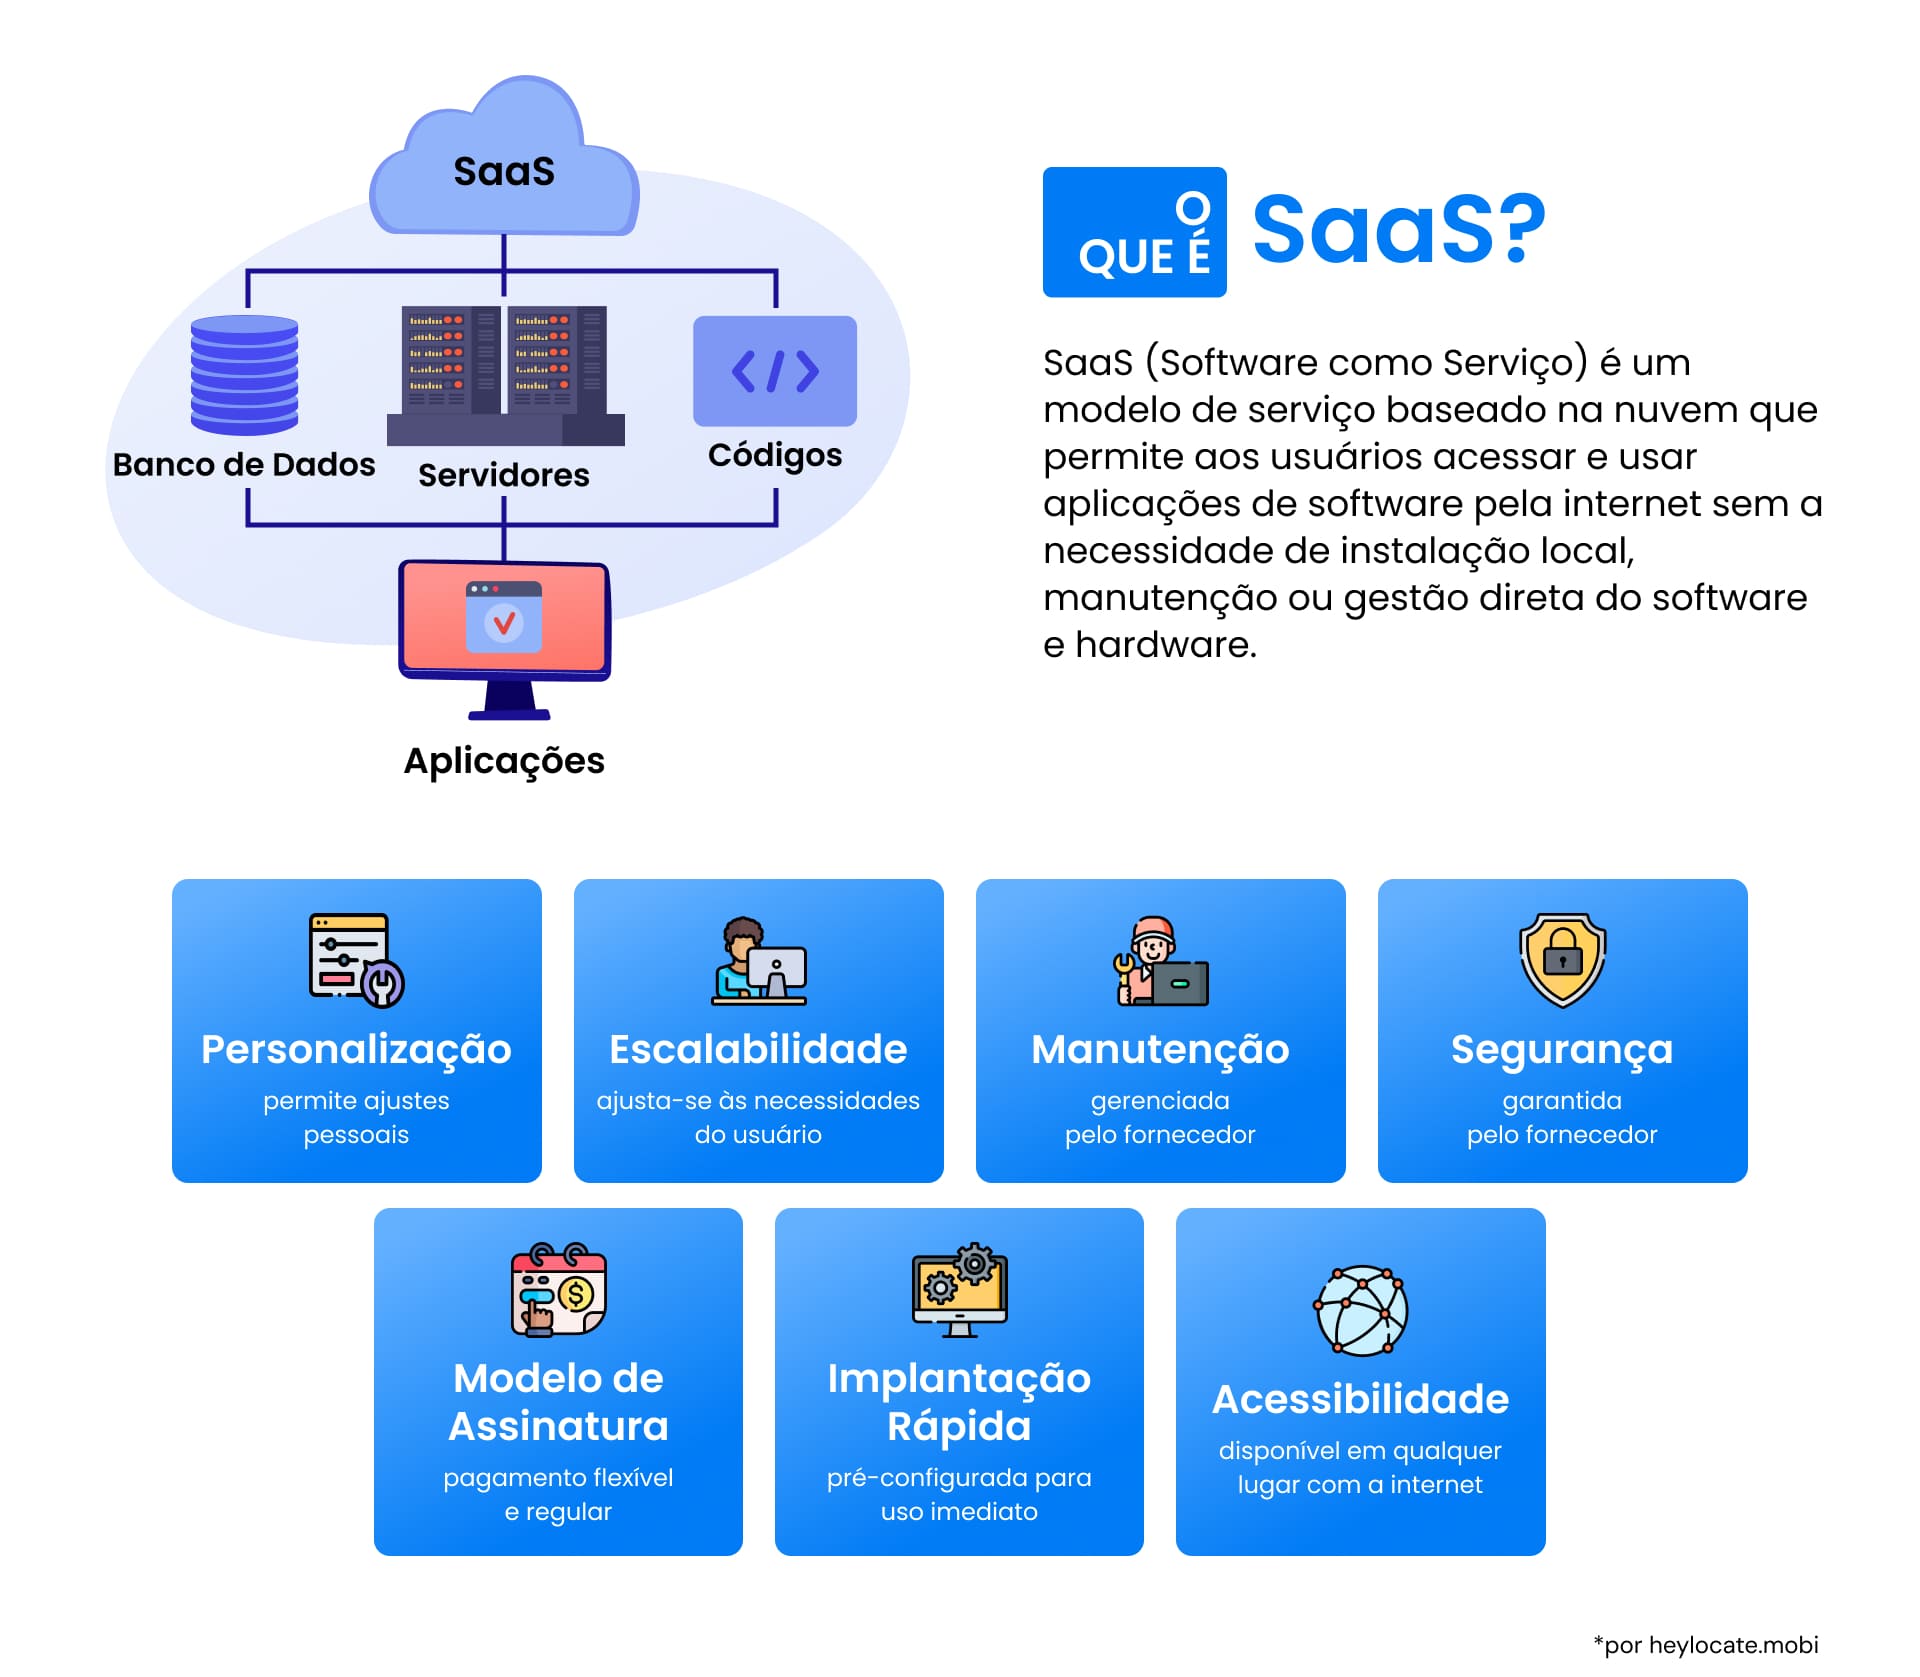 Infográfico explicando o modelo SaaS, que apresenta um símbolo de nuvem central com componentes como banco de dados, servidores e códigos conectados a vários aplicativos.